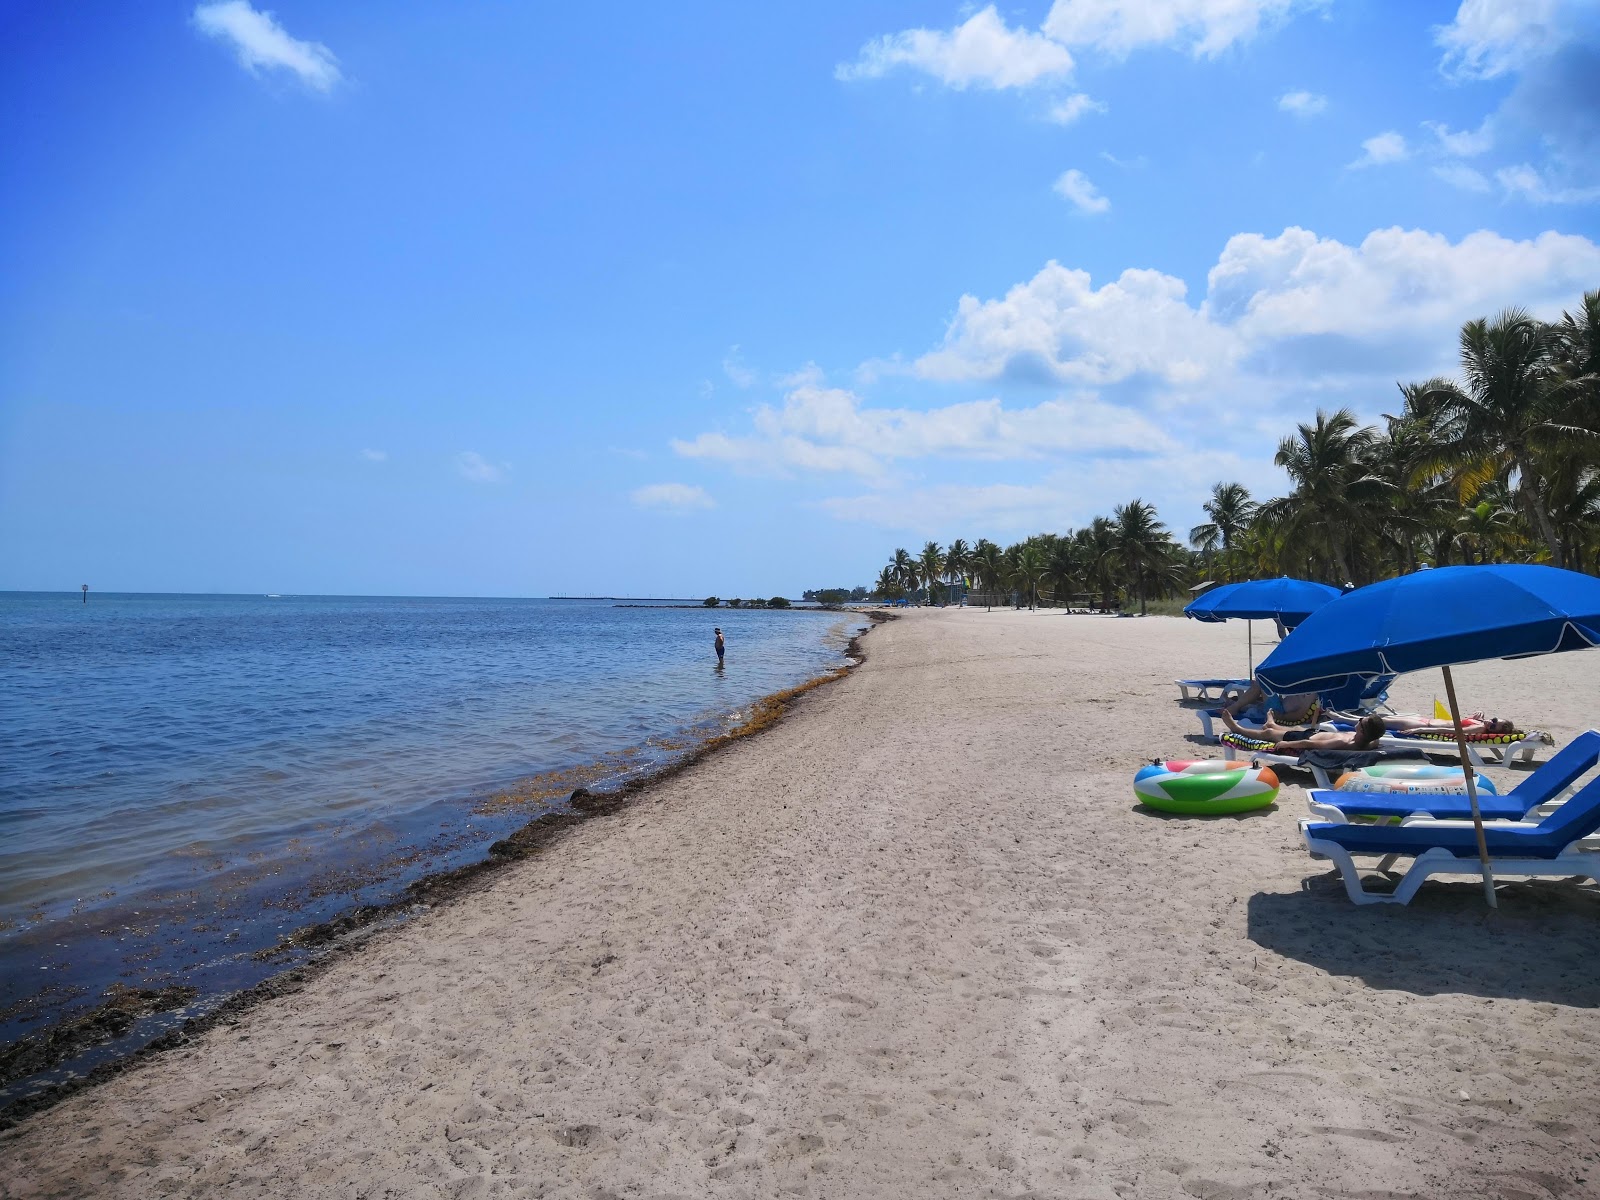 Zdjęcie Smathers beach - popularne miejsce wśród znawców relaksu